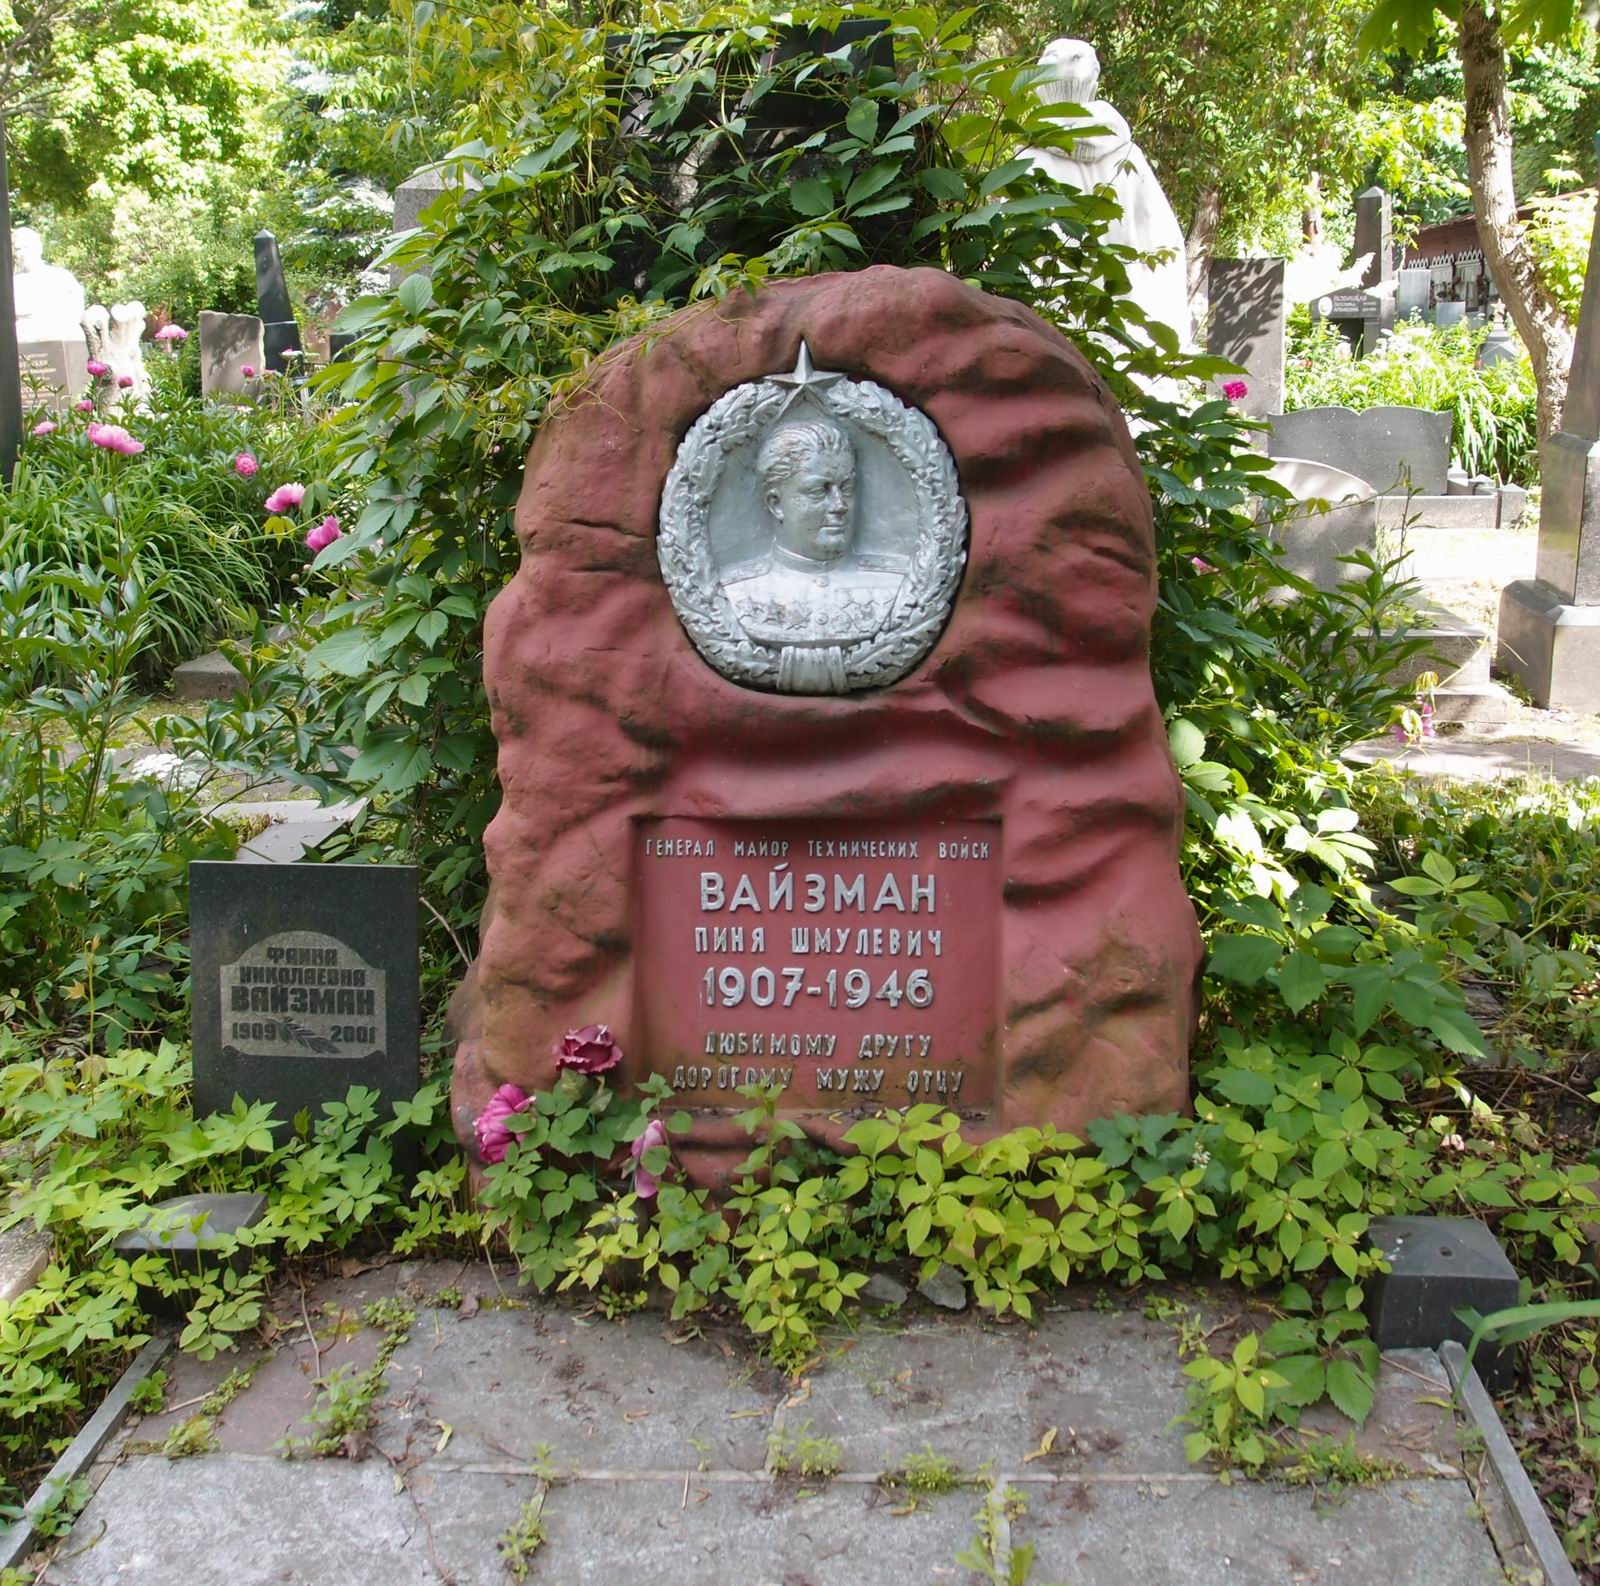 Памятник на могиле Вайзмана П.Ш. (1907–1946), на Новодевичьем кладбище (4–14–16). Нажмите левую кнопку мыши чтобы увидеть фрагмент памятника.